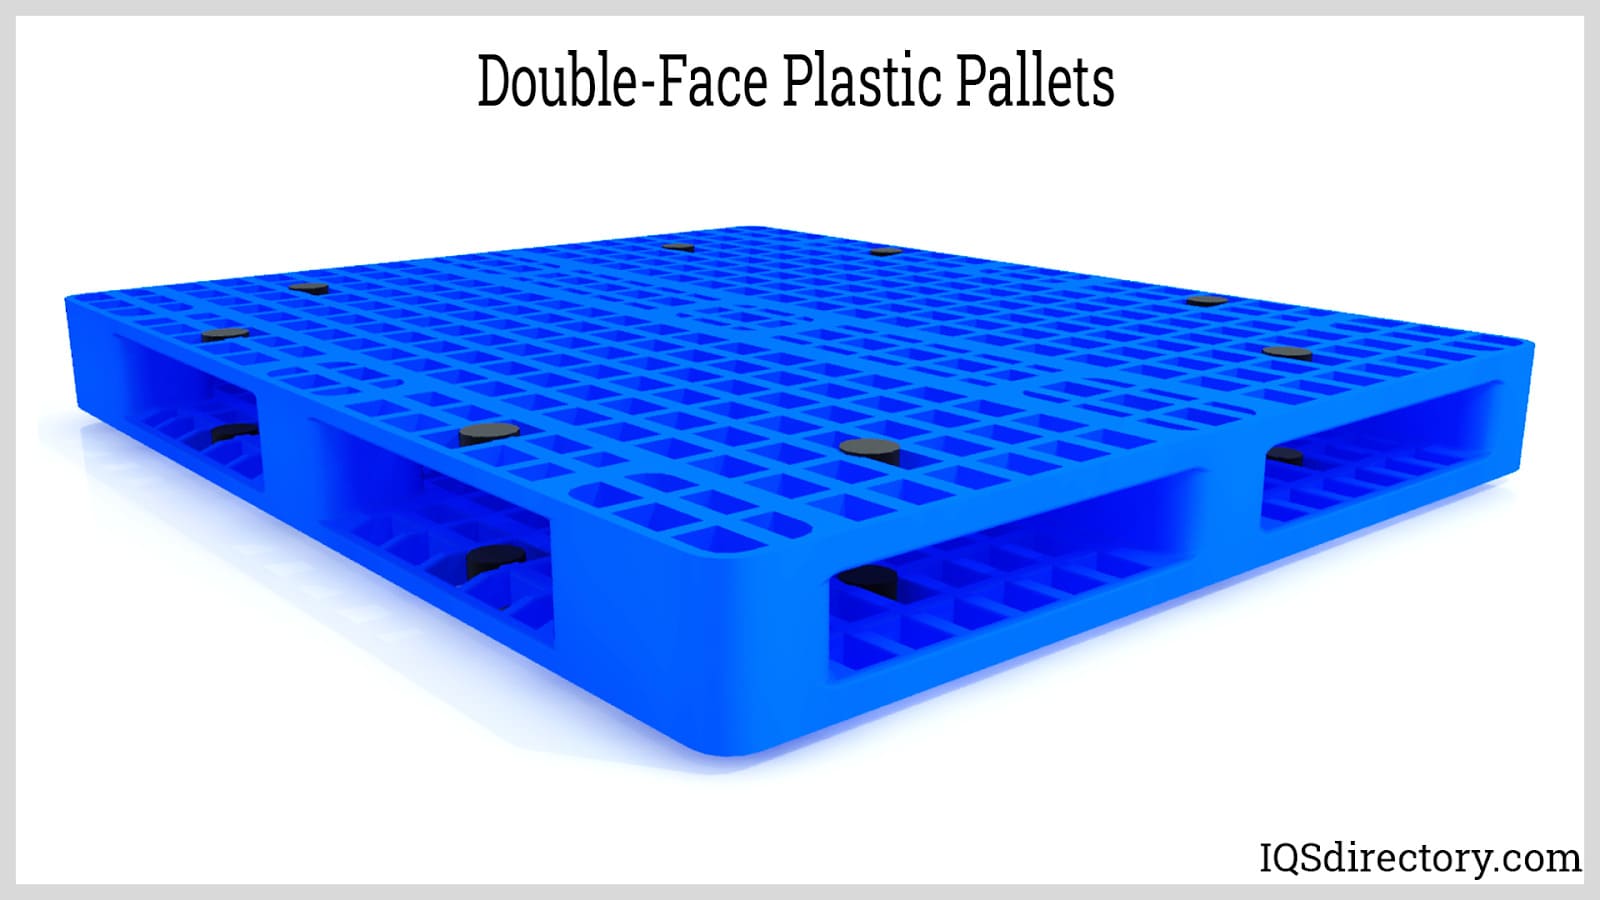 Double-Face Plastic Pallets